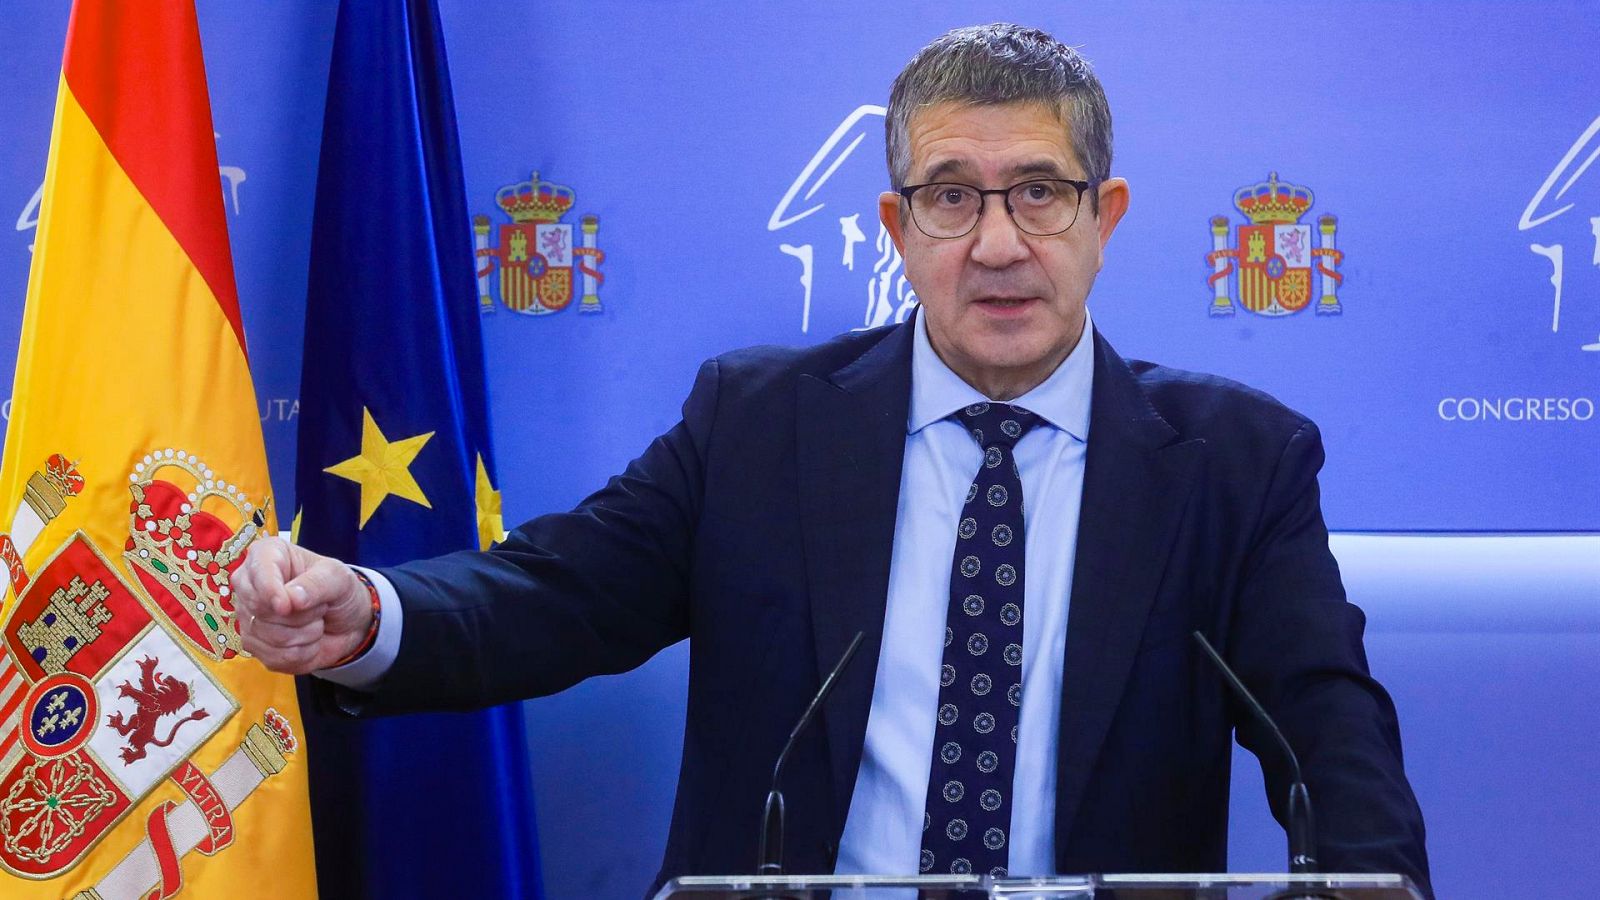 El PSOE prepara acciones legales contra los "ataques violentos" en Ferraz pide al PP que "rompa" con Vox